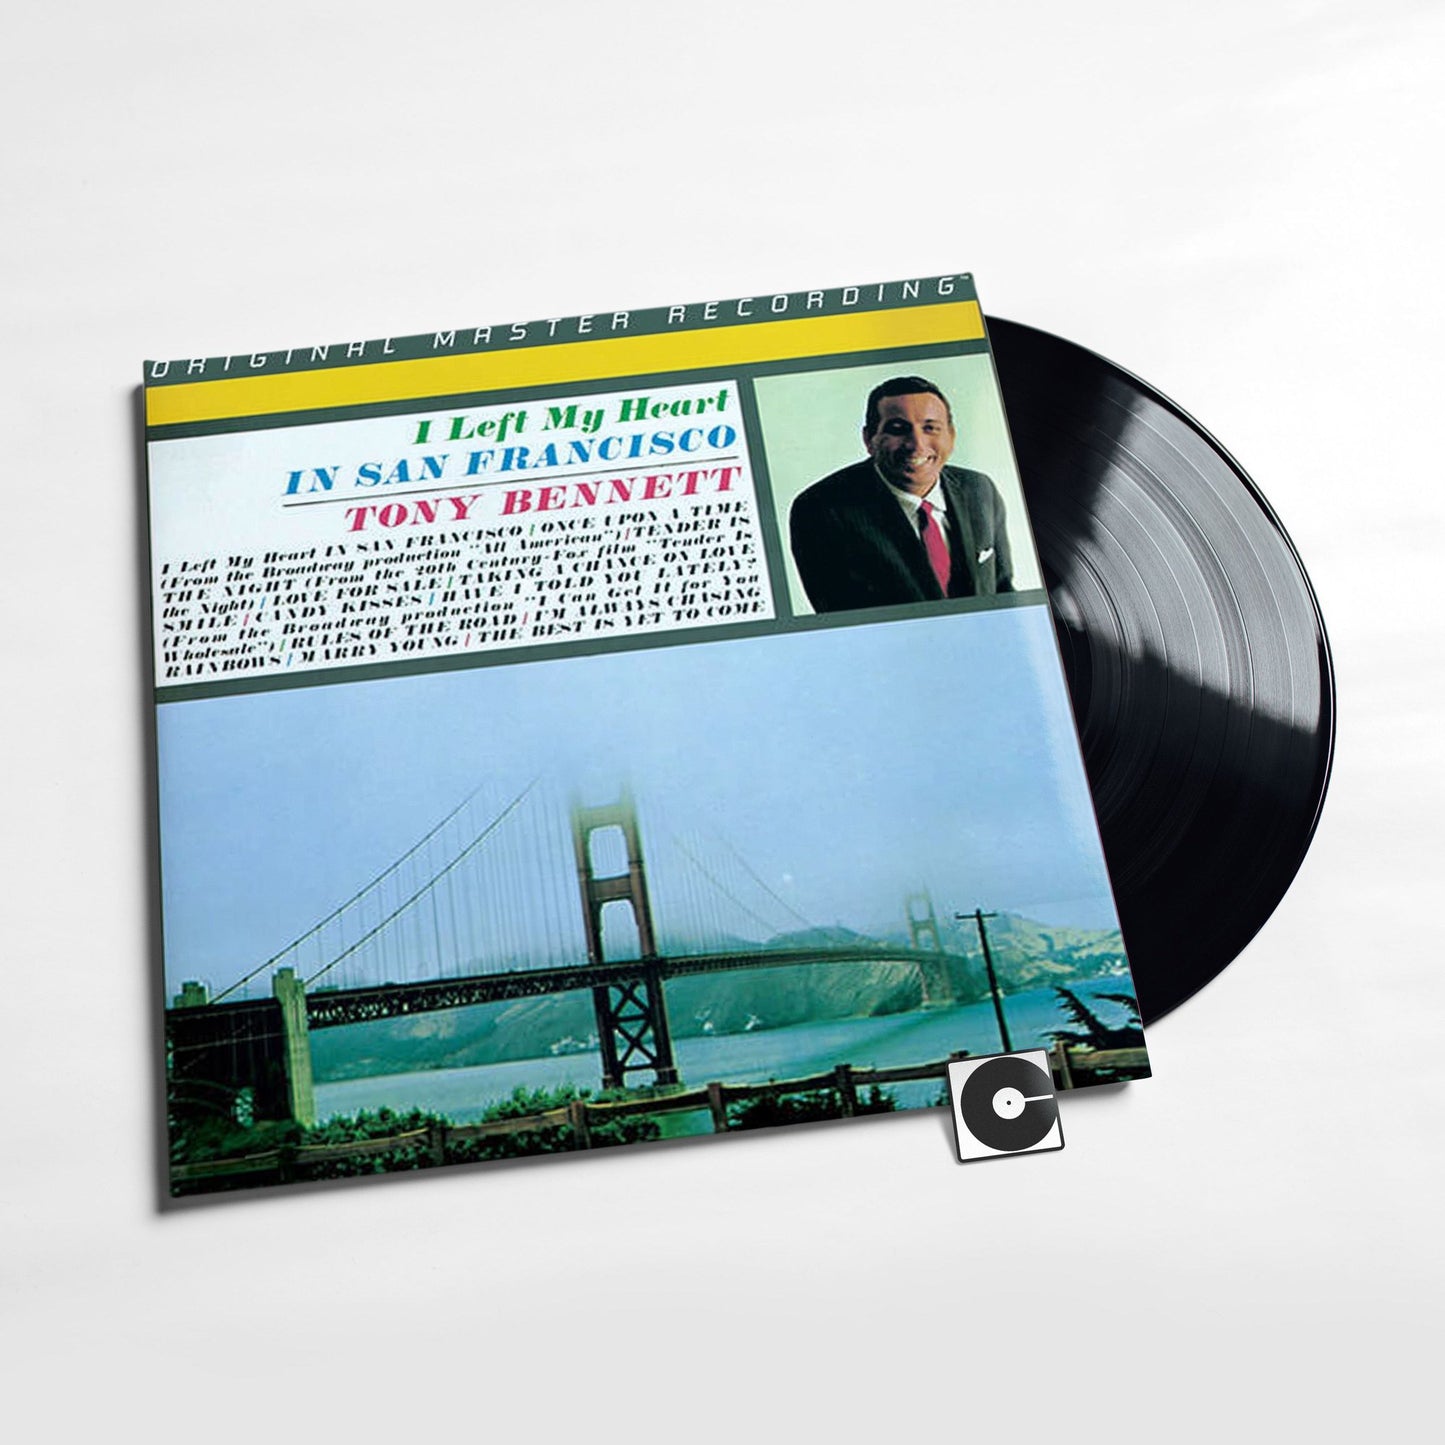 Tony Bennett - "I left My Heart In San Francisco" MoFi